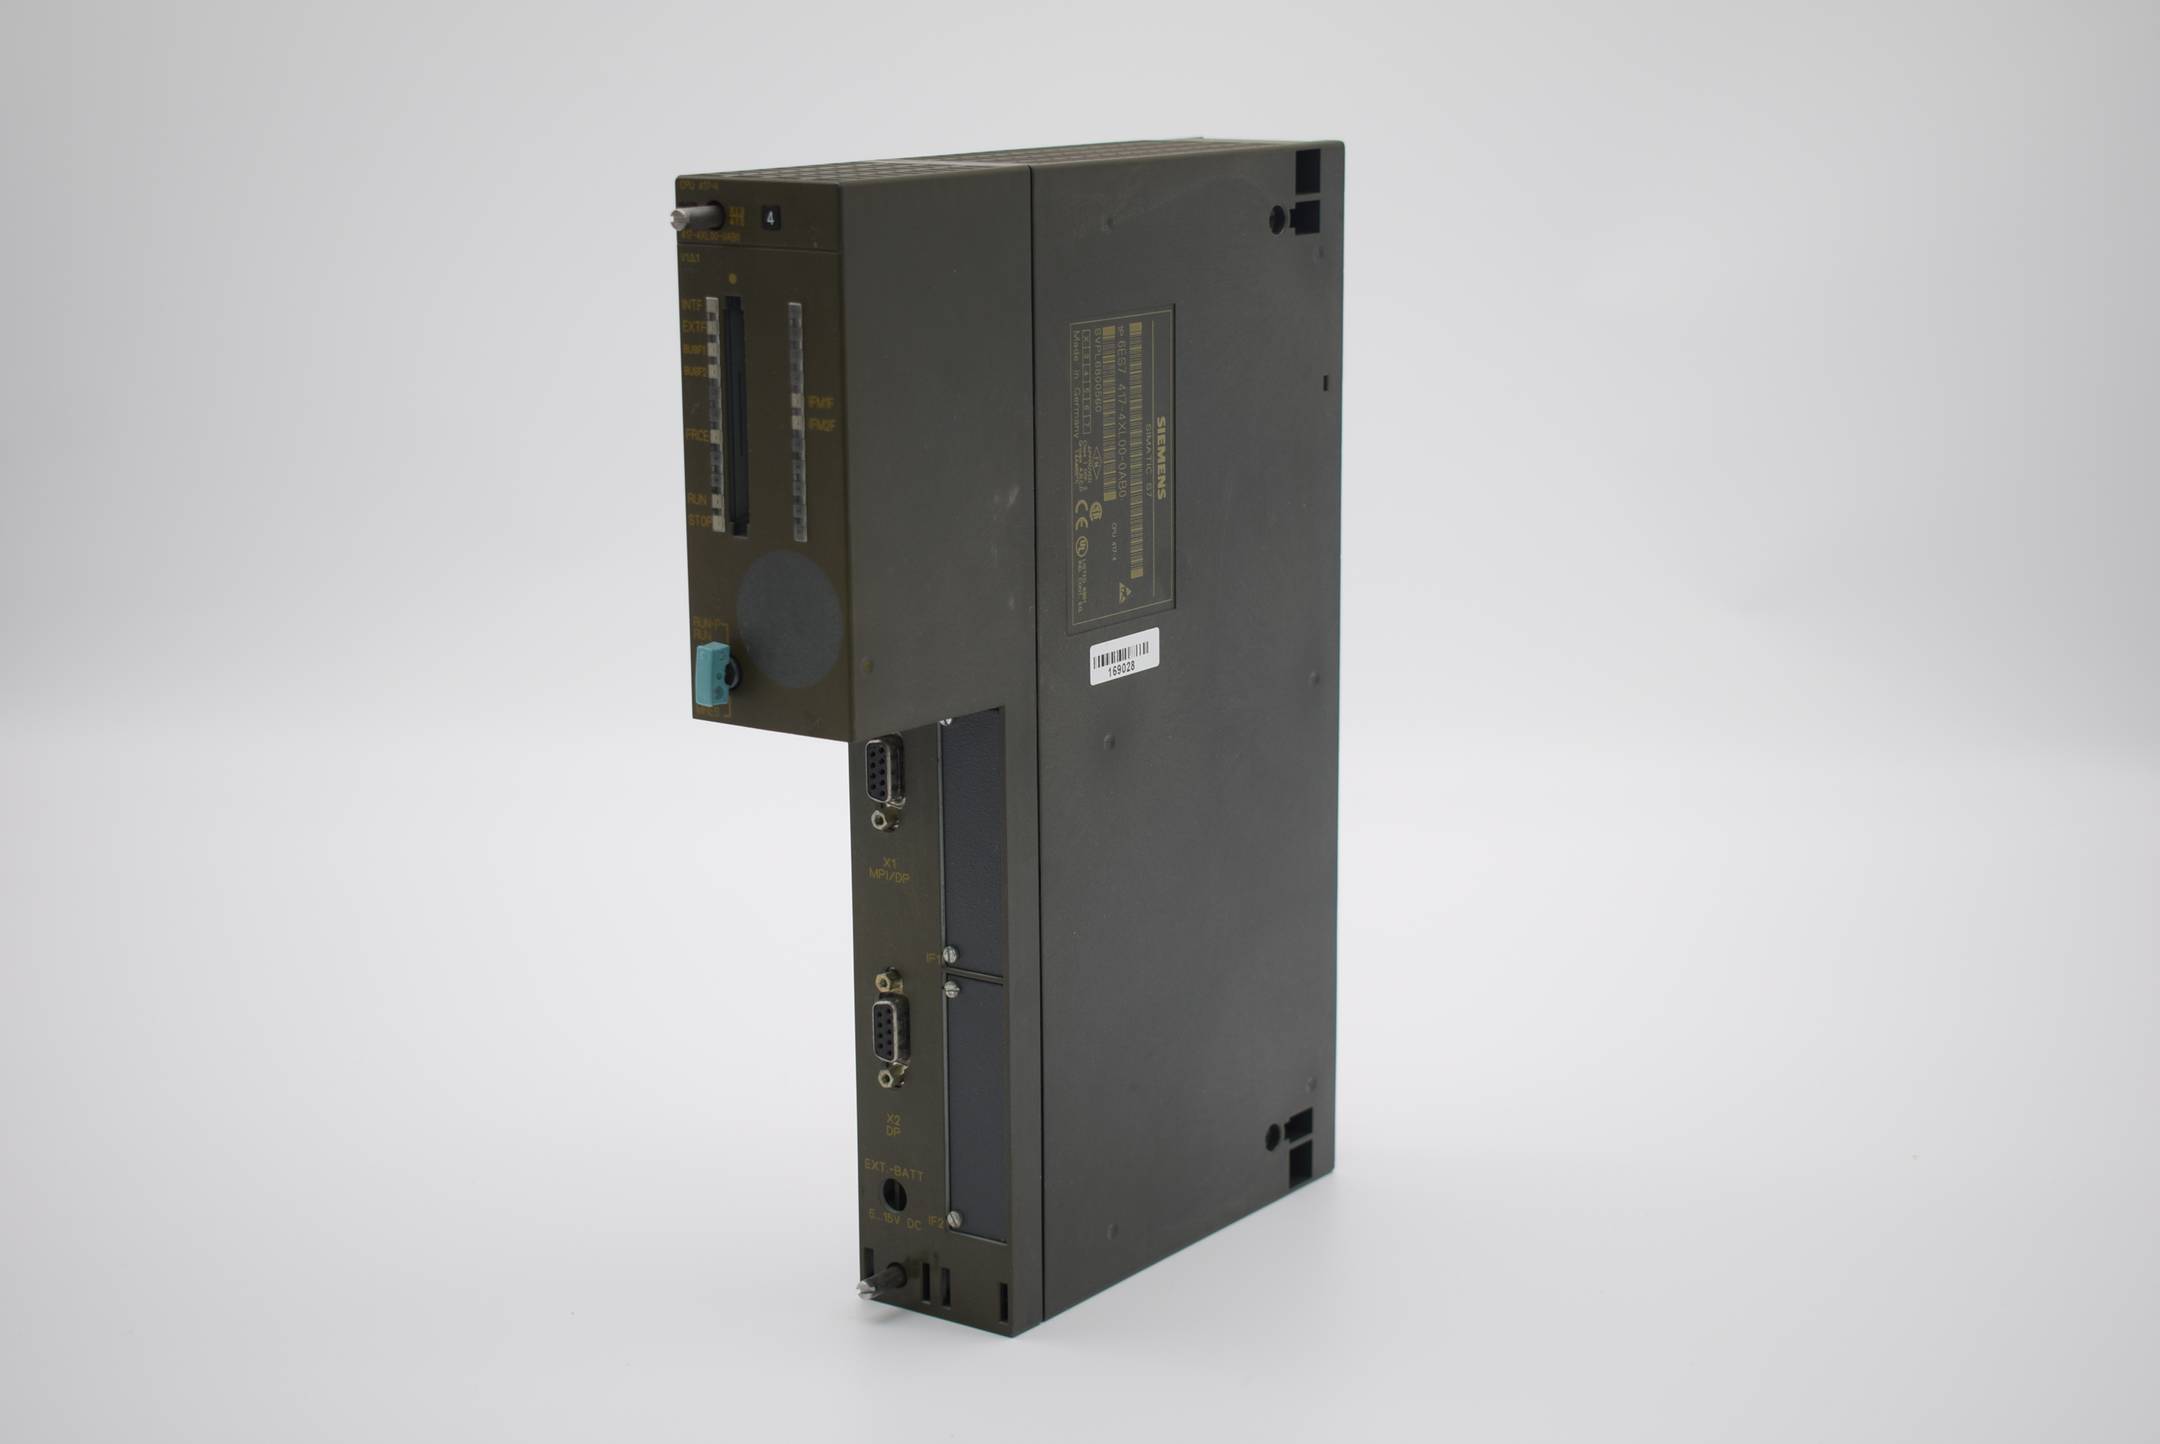 Siemens simatic S7 CPU 417-4 6ES7 417-4XL00-0AB0 ( 6ES7417-4XL00-0AB0 ) E. 02